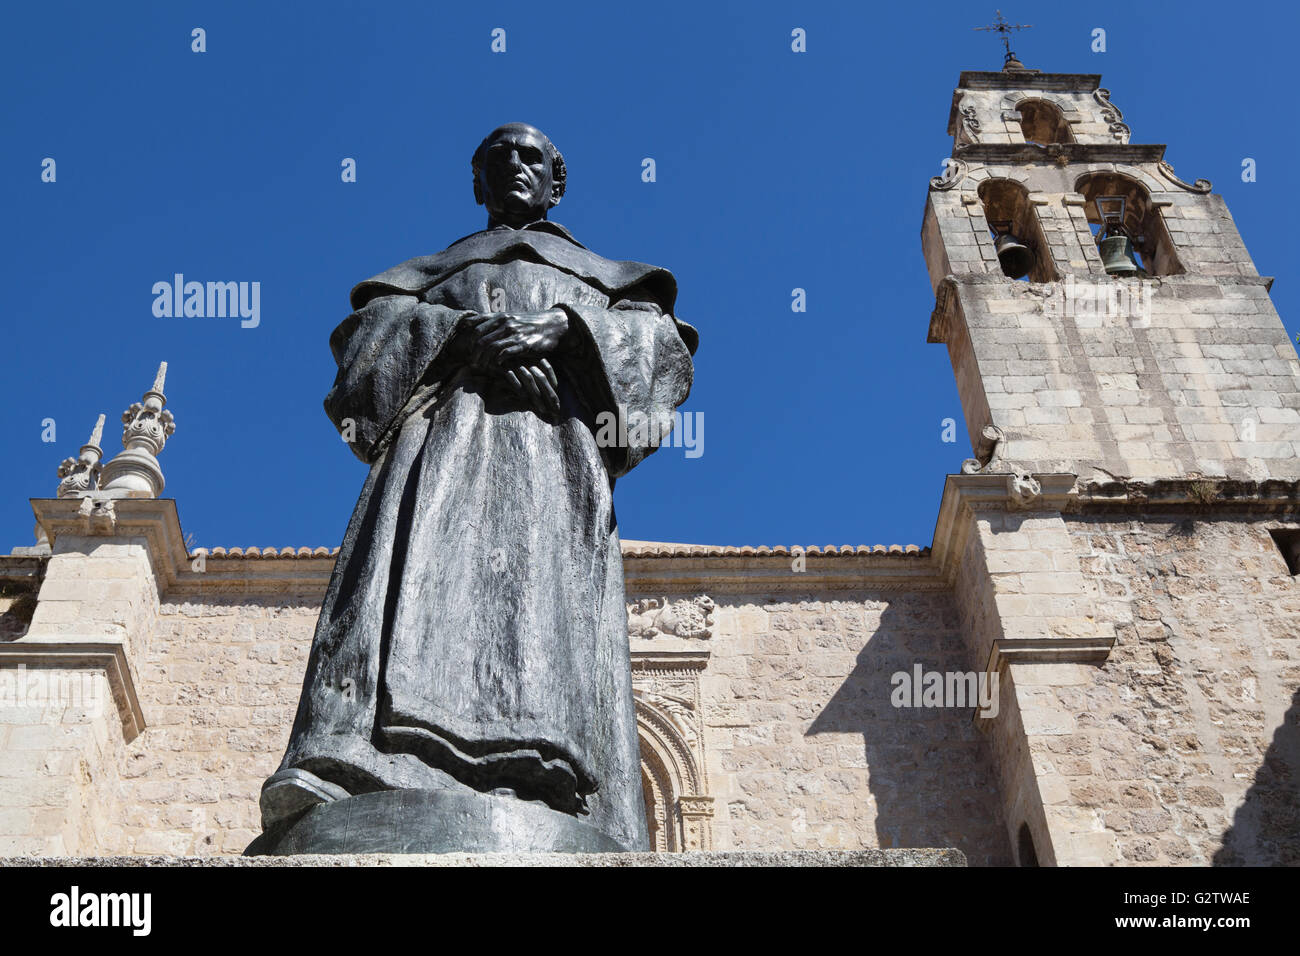 Espagne, Andalousie, Grenade, Statue de Fray Luis de Granada en face de Iglesia de Santo Domingo. Banque D'Images